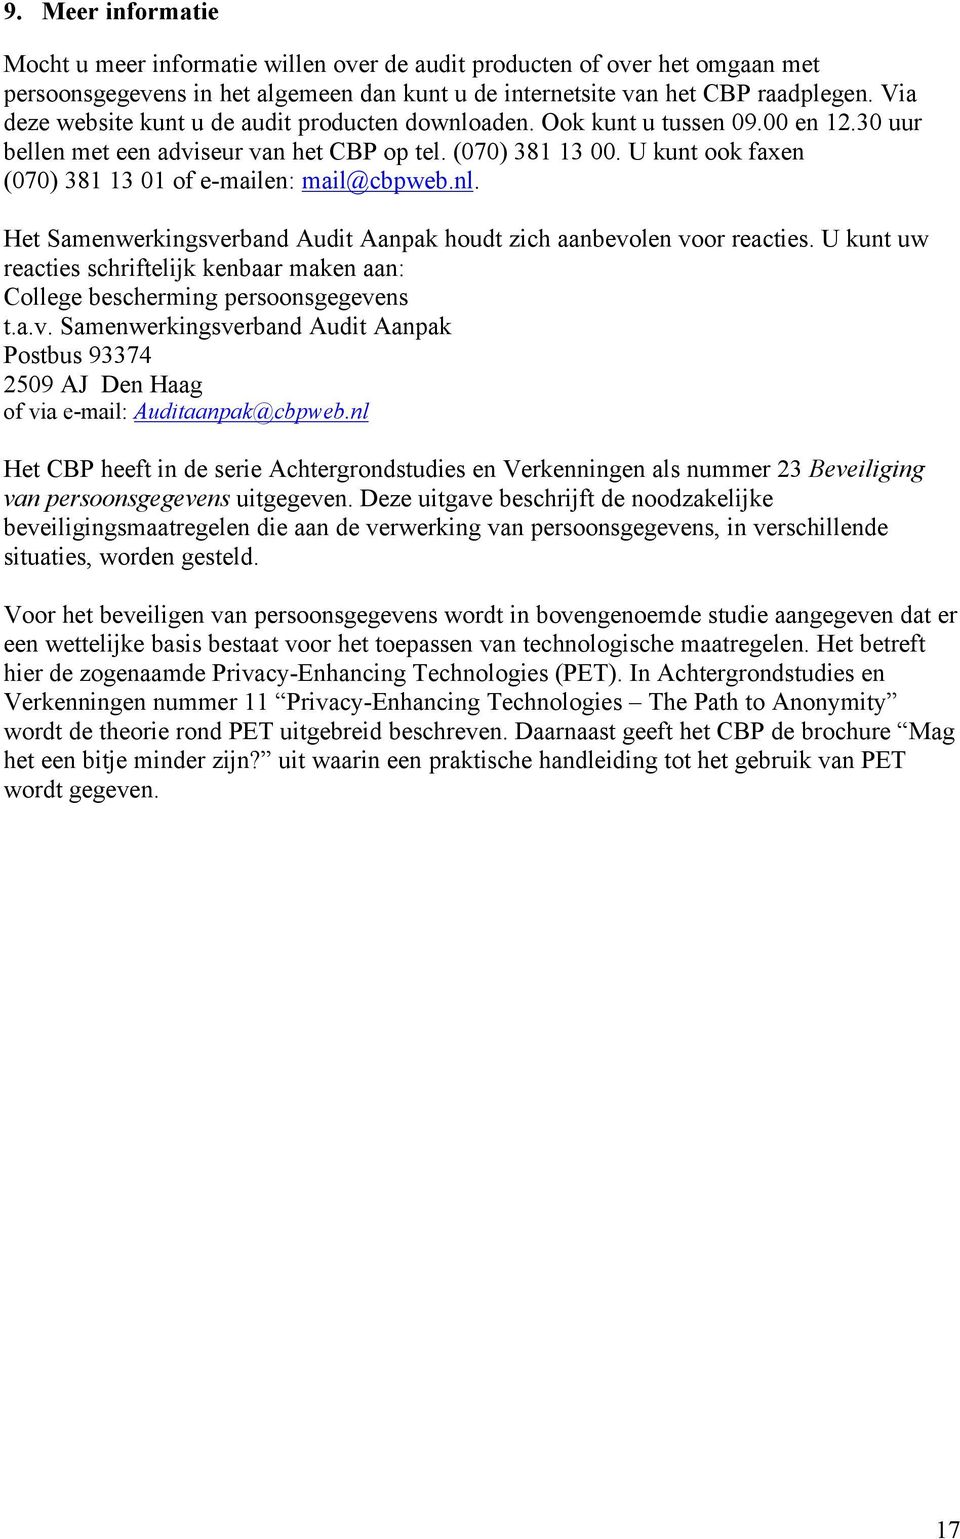 U kunt ook faxen (070) 381 13 01 of e-mailen: mail@cbpweb.nl. Het Samenwerkingsverband Audit Aanpak houdt zich aanbevolen voor reacties.